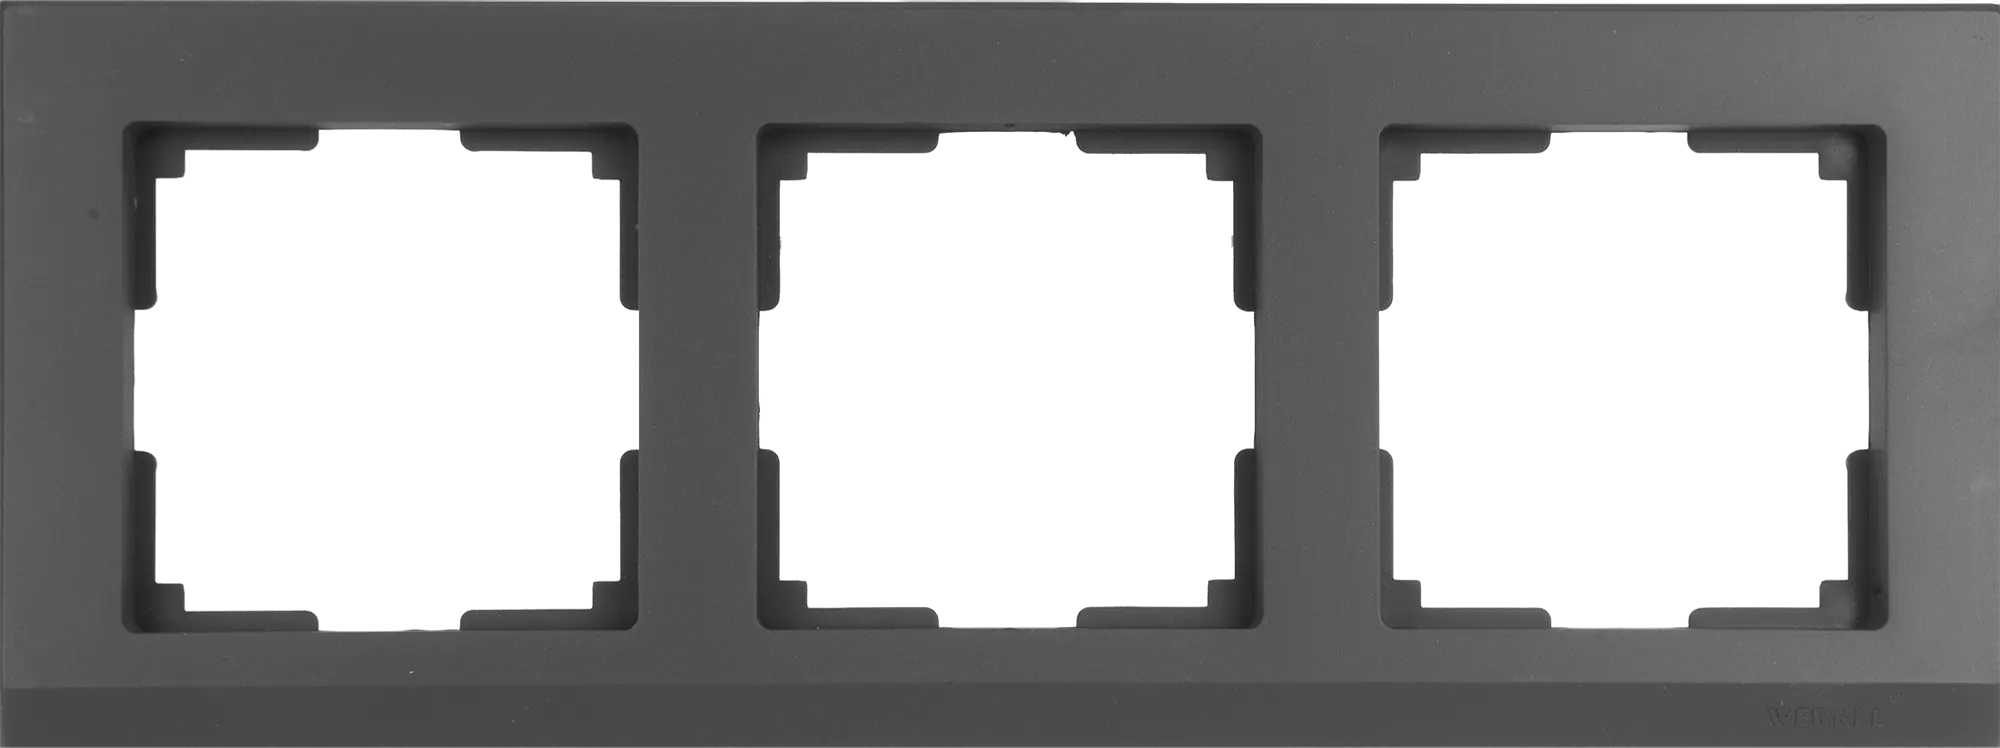 Рамка для розеток и выключателей Werkel Stark 3 поста, цвет чёрный матовый рамка эра 14 5204 05 на 4 поста металл elegance чёрный антрацит б0034561